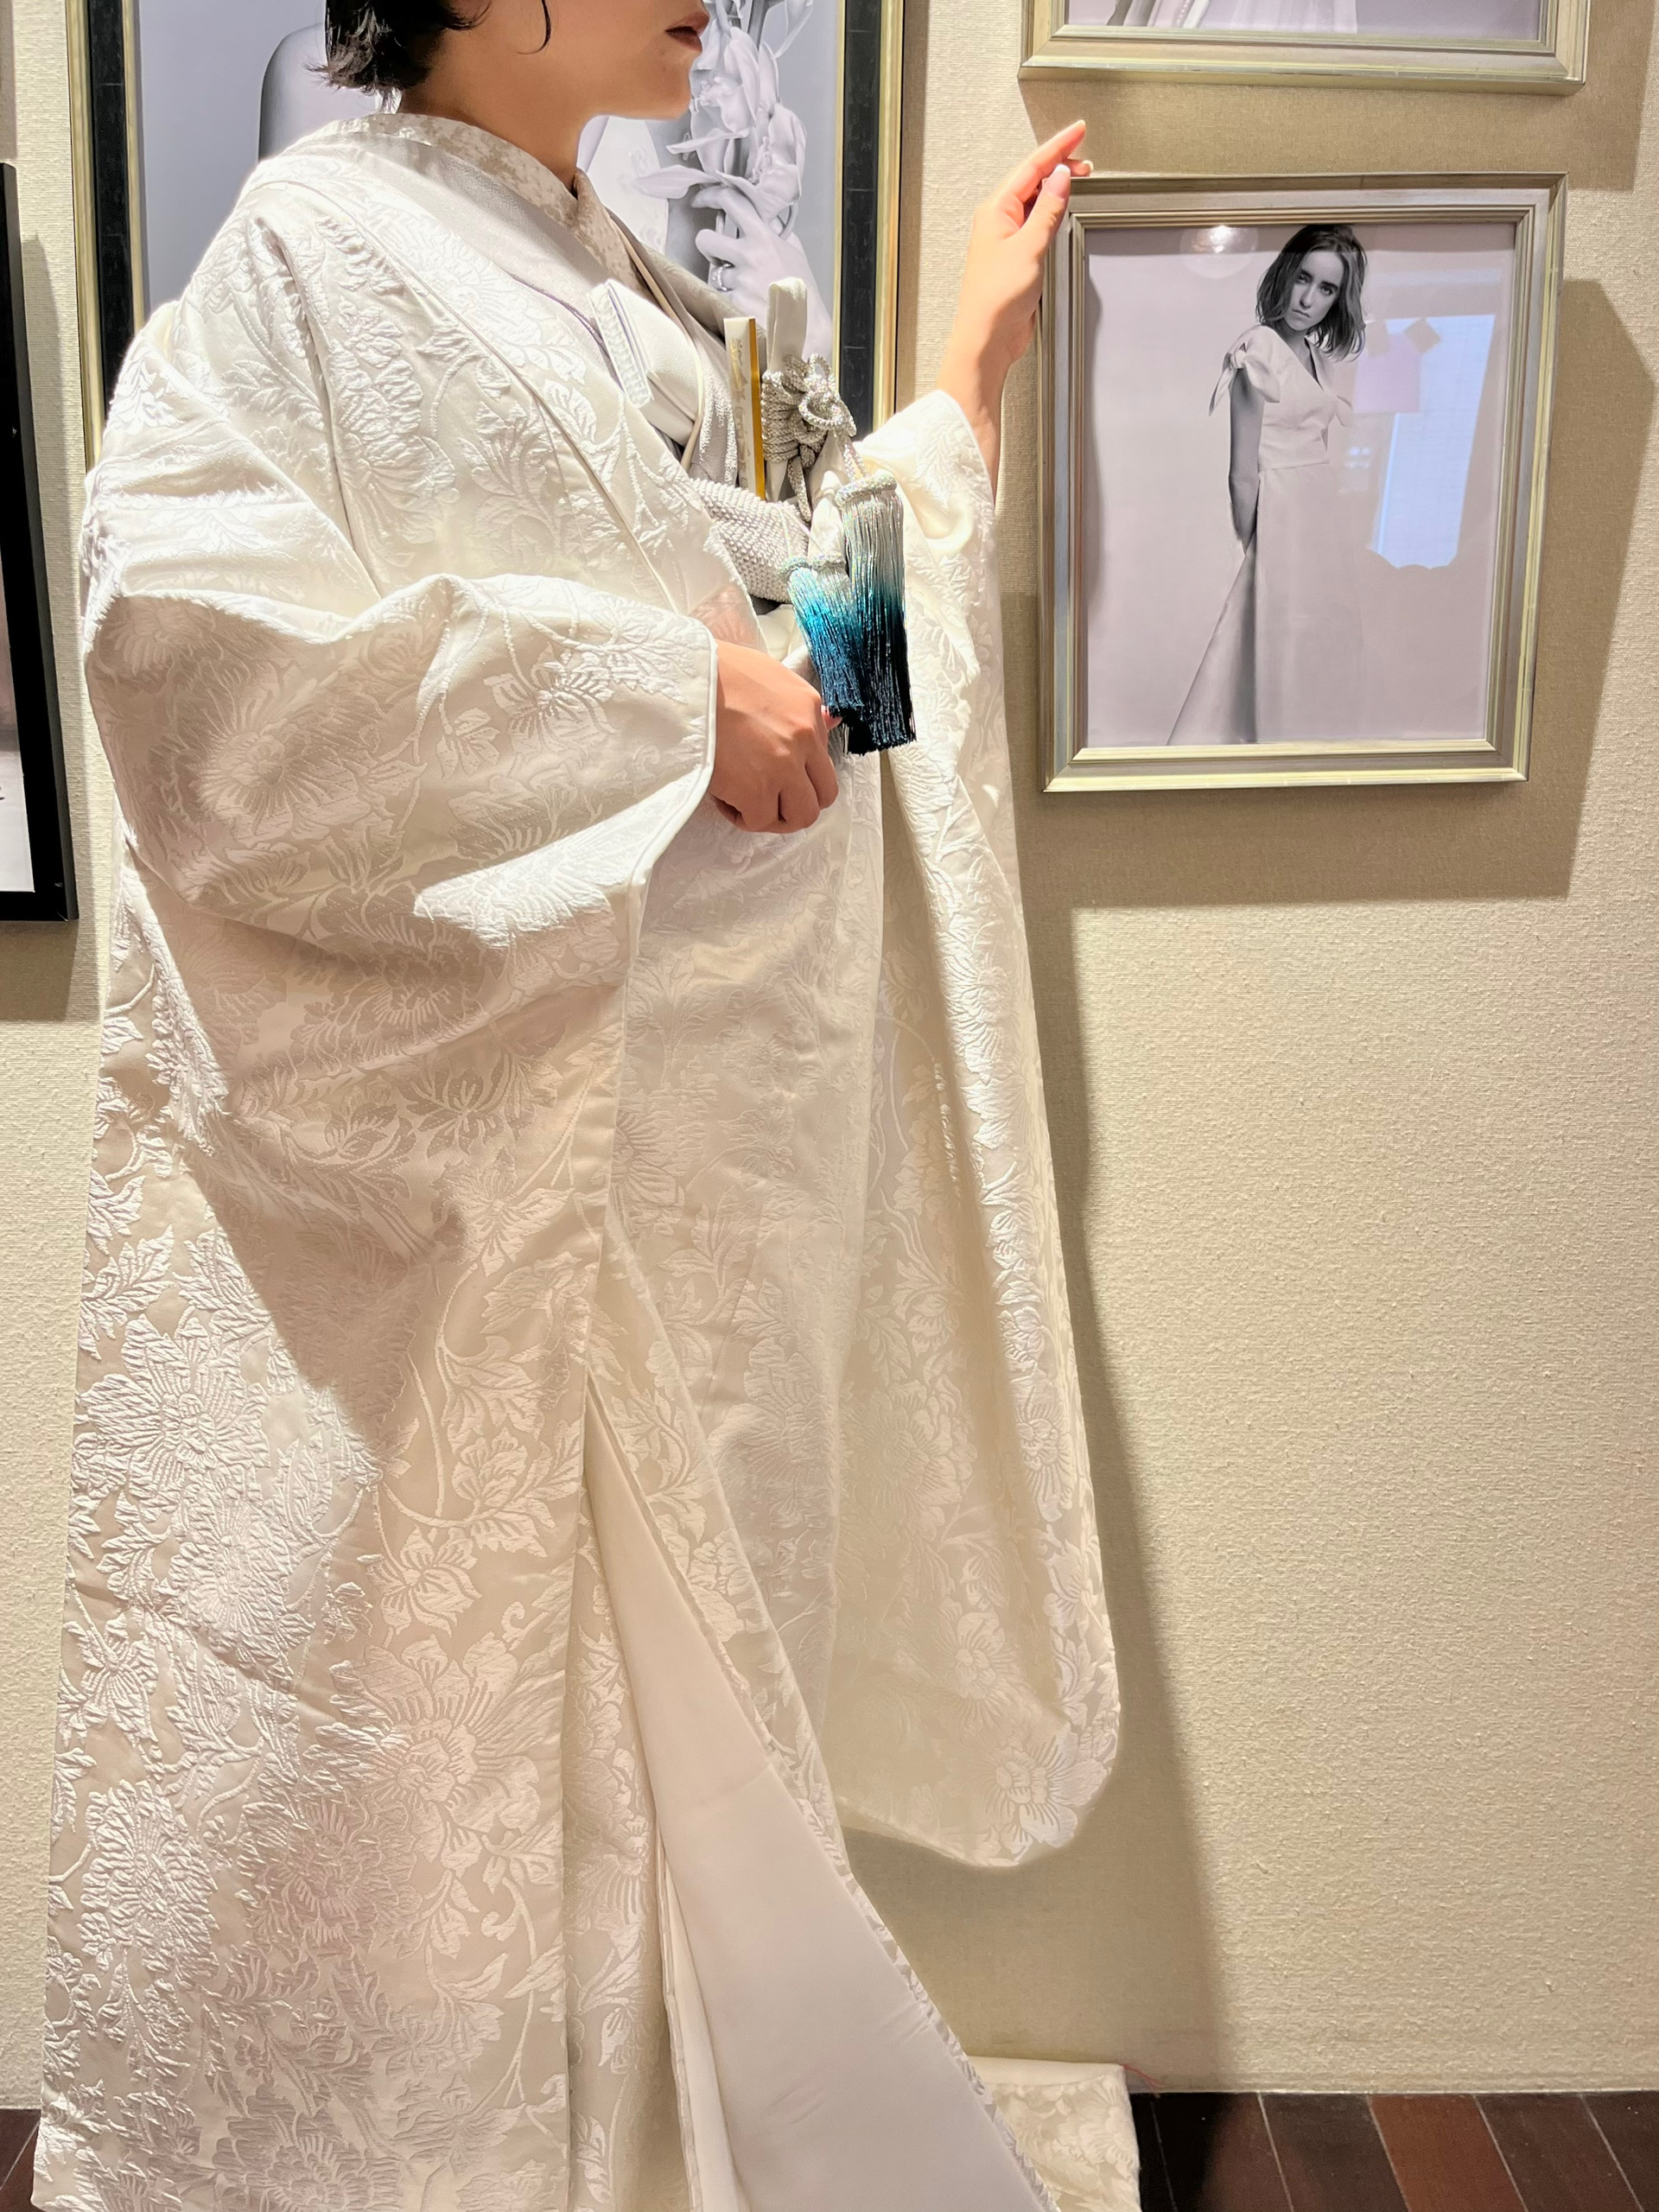 ご結婚式で人気のある日本の伝統衣裳、白無垢は色小物や色掛下、アクセサリーを組み合わせることでモダンでおしゃれな着こなしに仕上がります